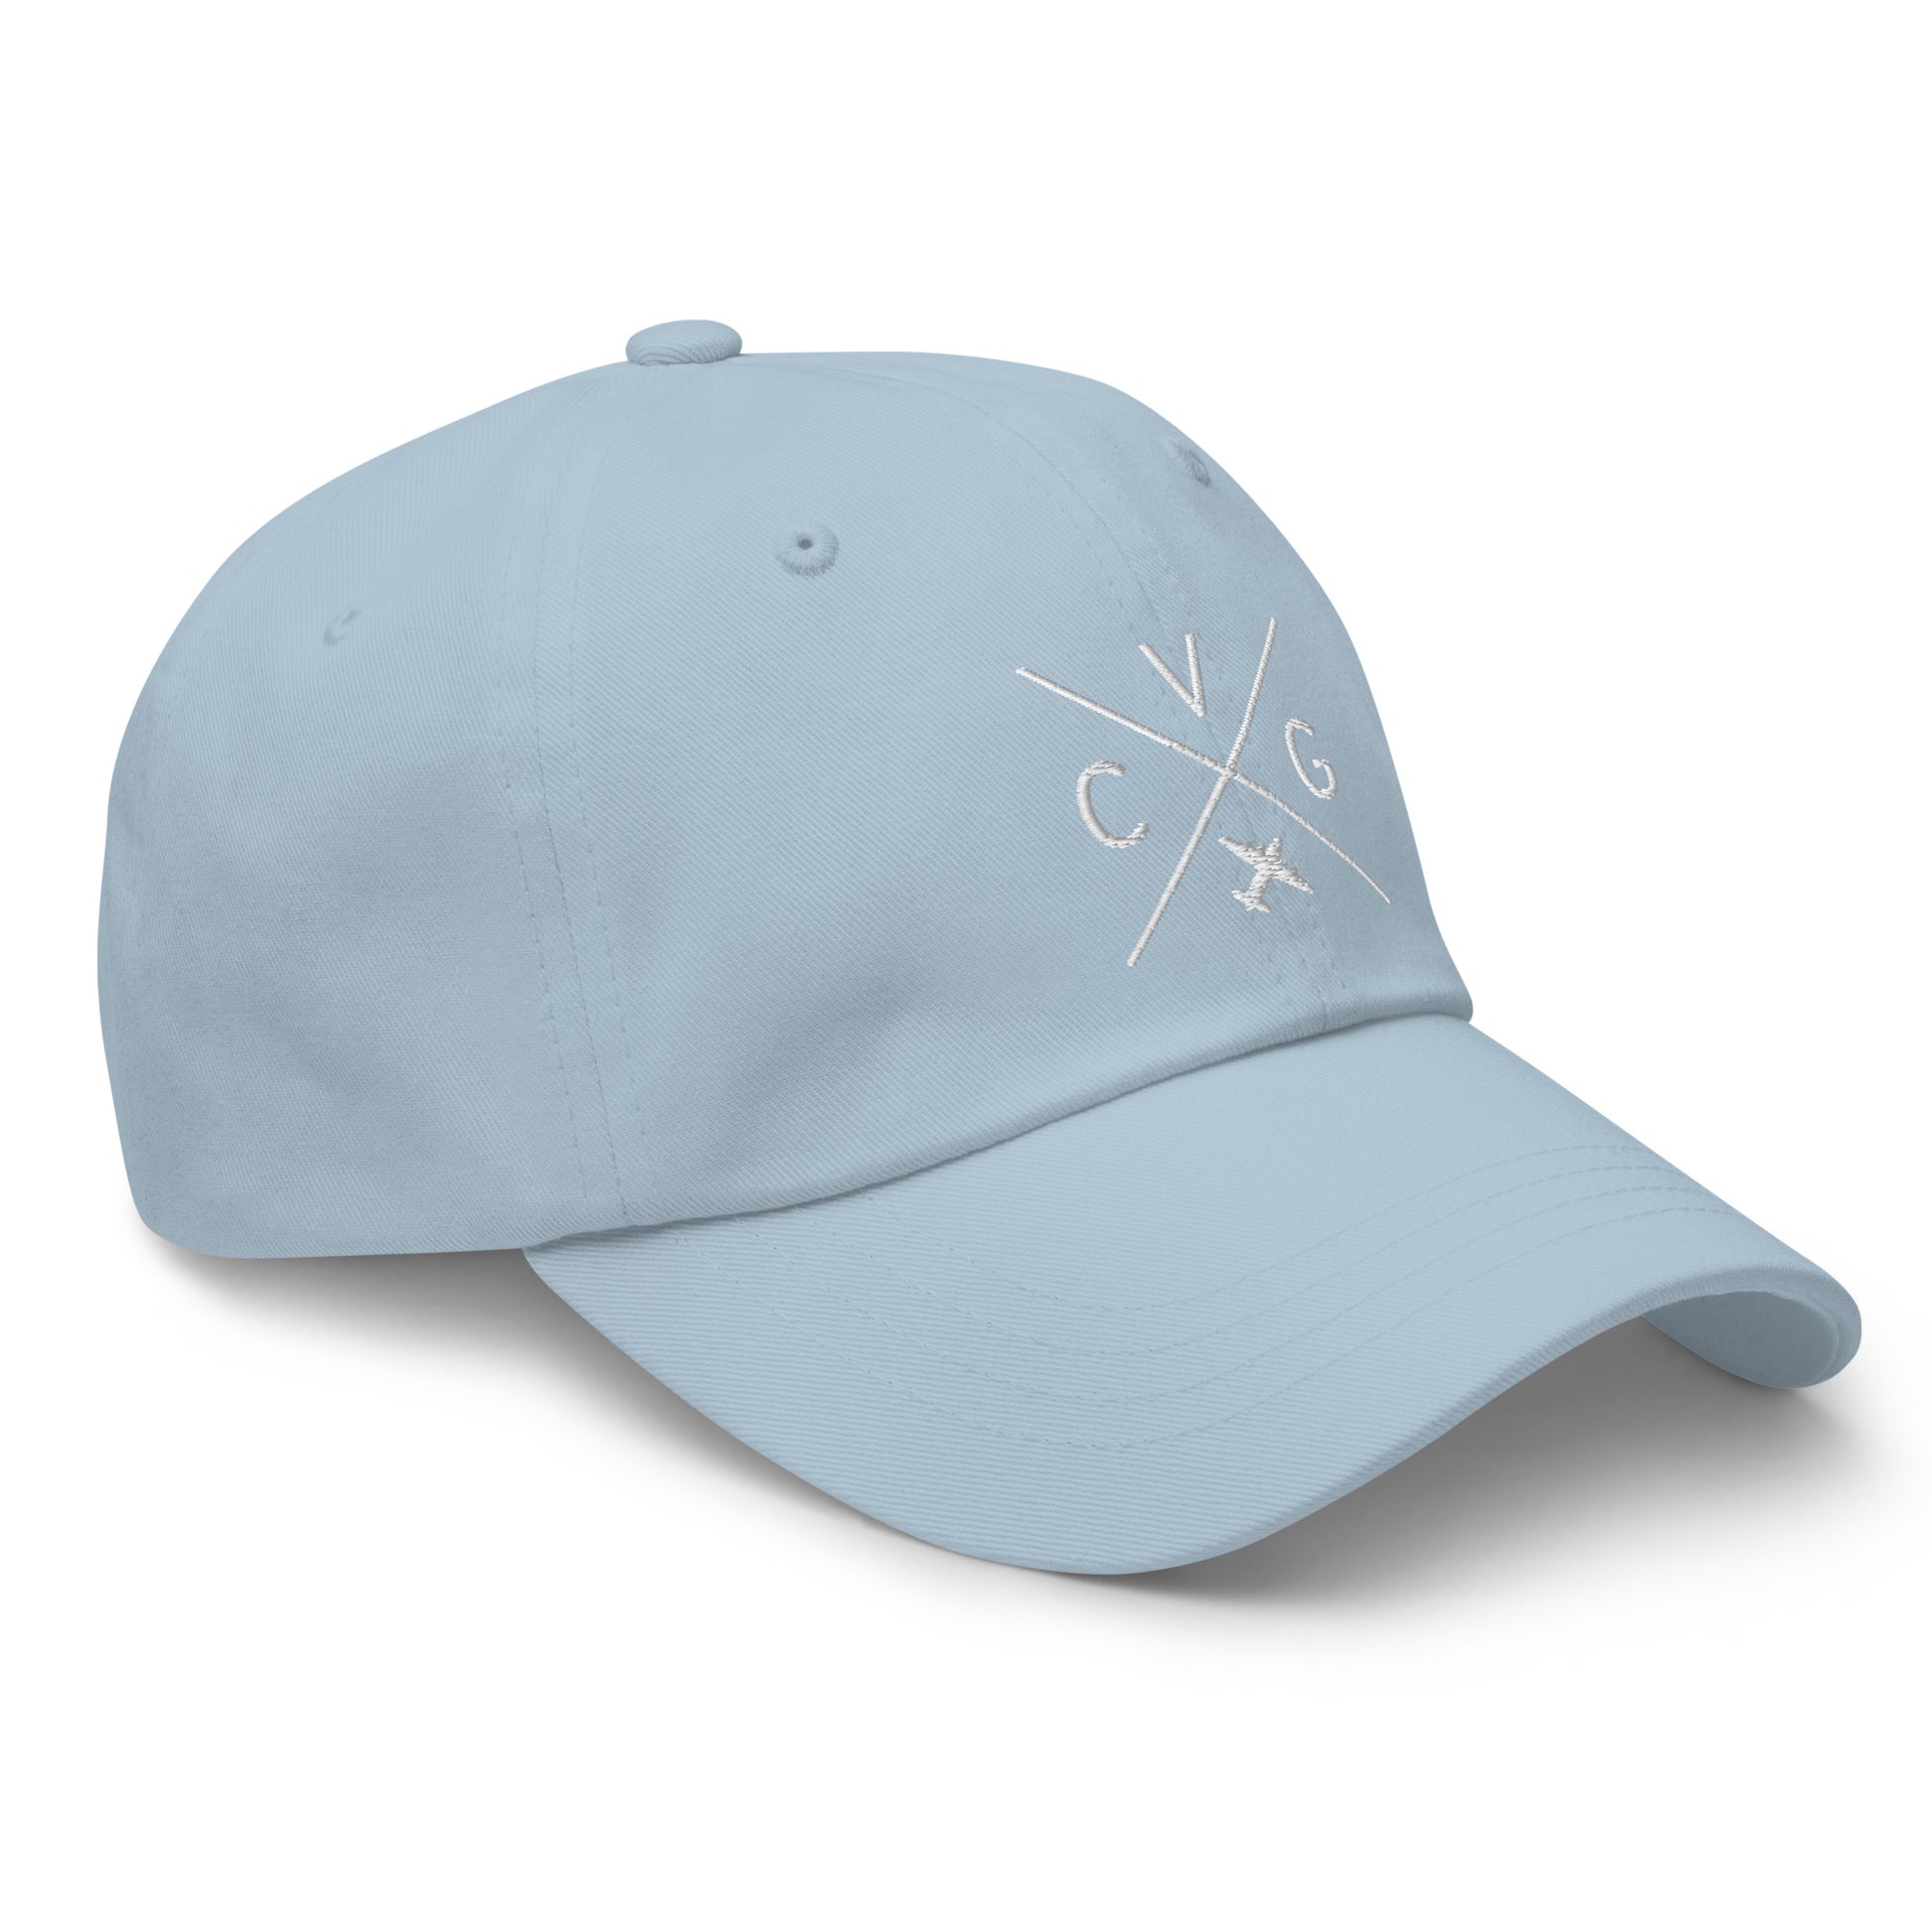 Crossed-X Dad Hat - White • CVG Cincinnati • YHM Designs - Image 29